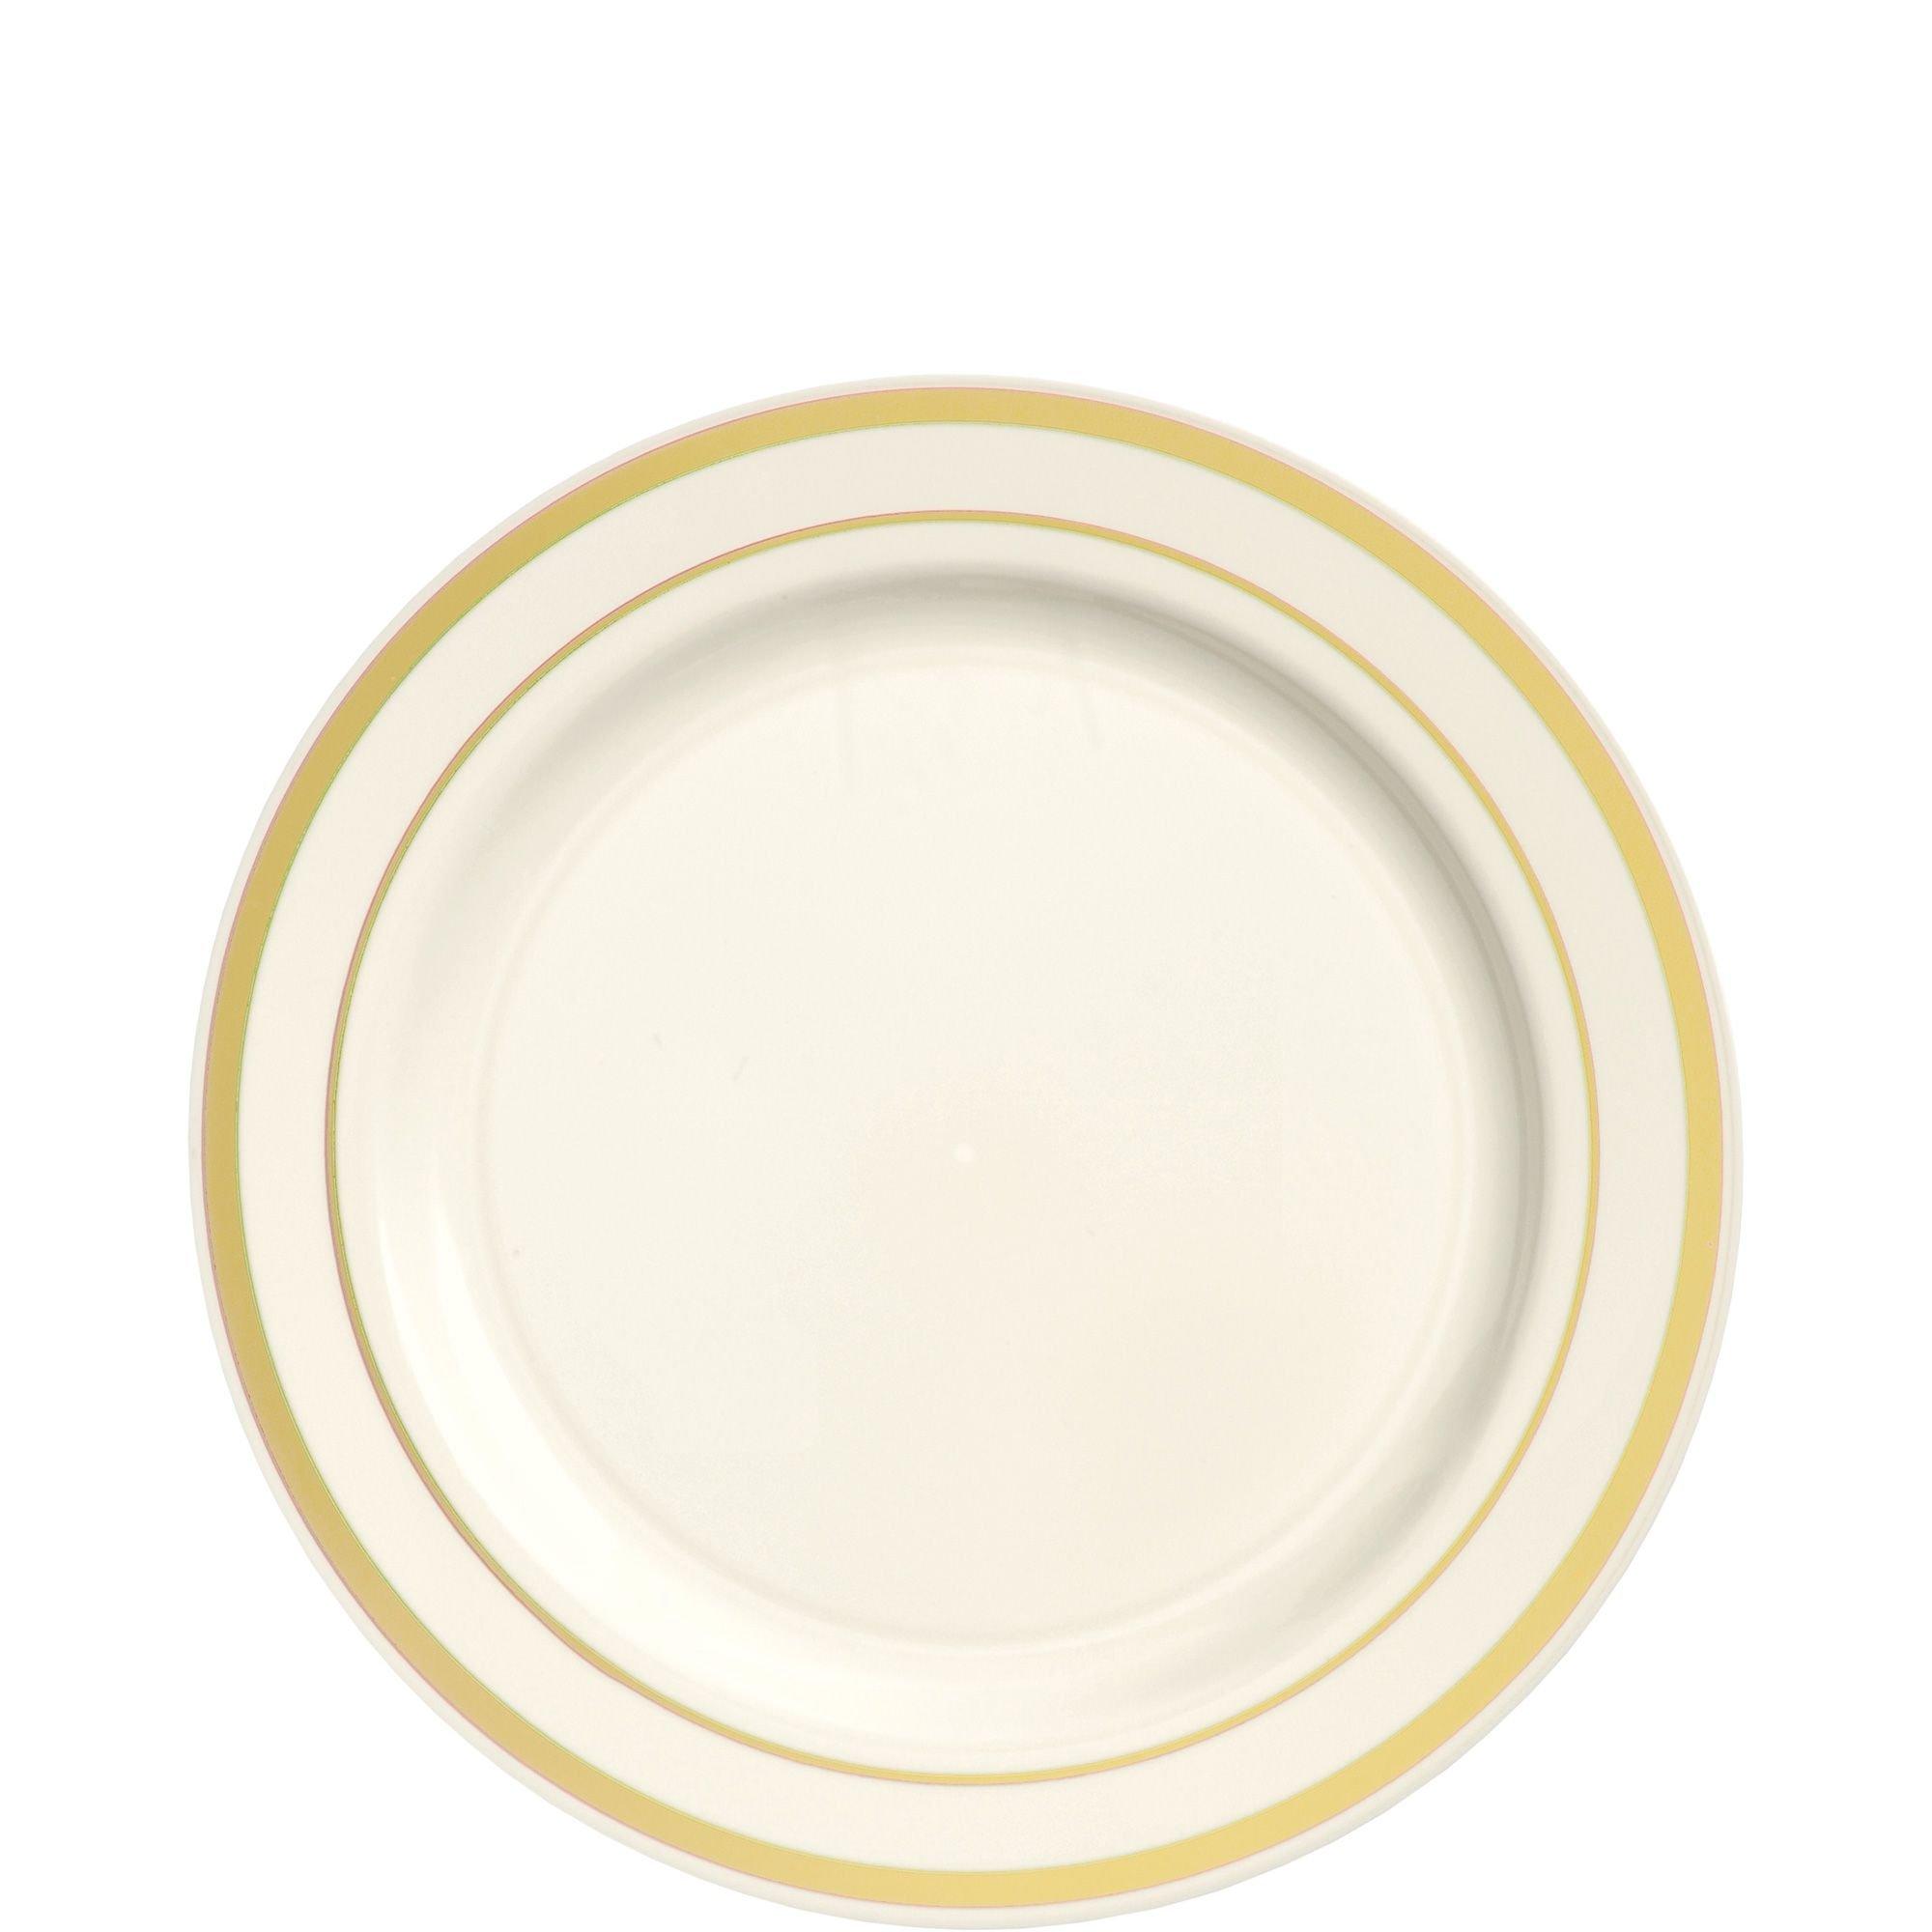 Cream Gold-Trimmed Premium Plastic Appetizer Plates 20ct